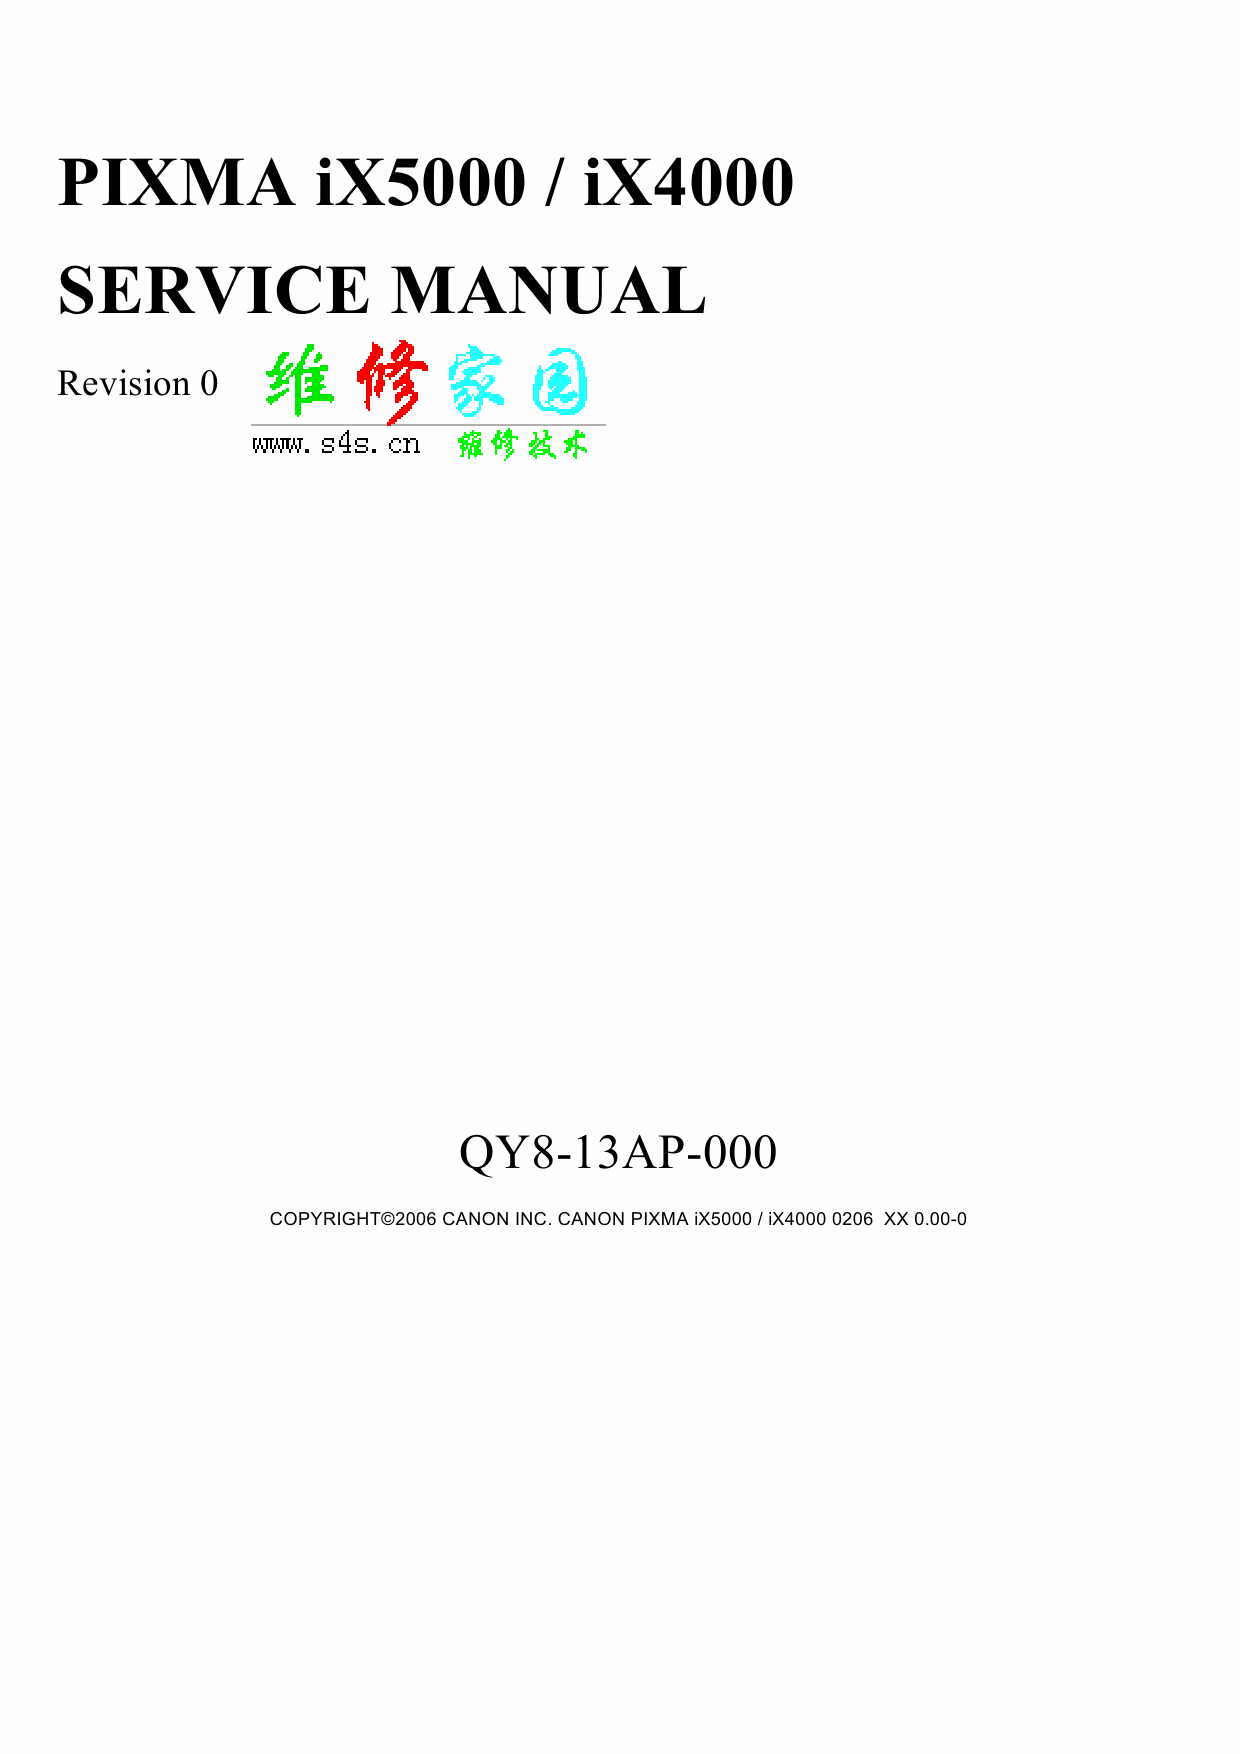 Canon PIXMA iX5000 iX4000 Service Manual-1